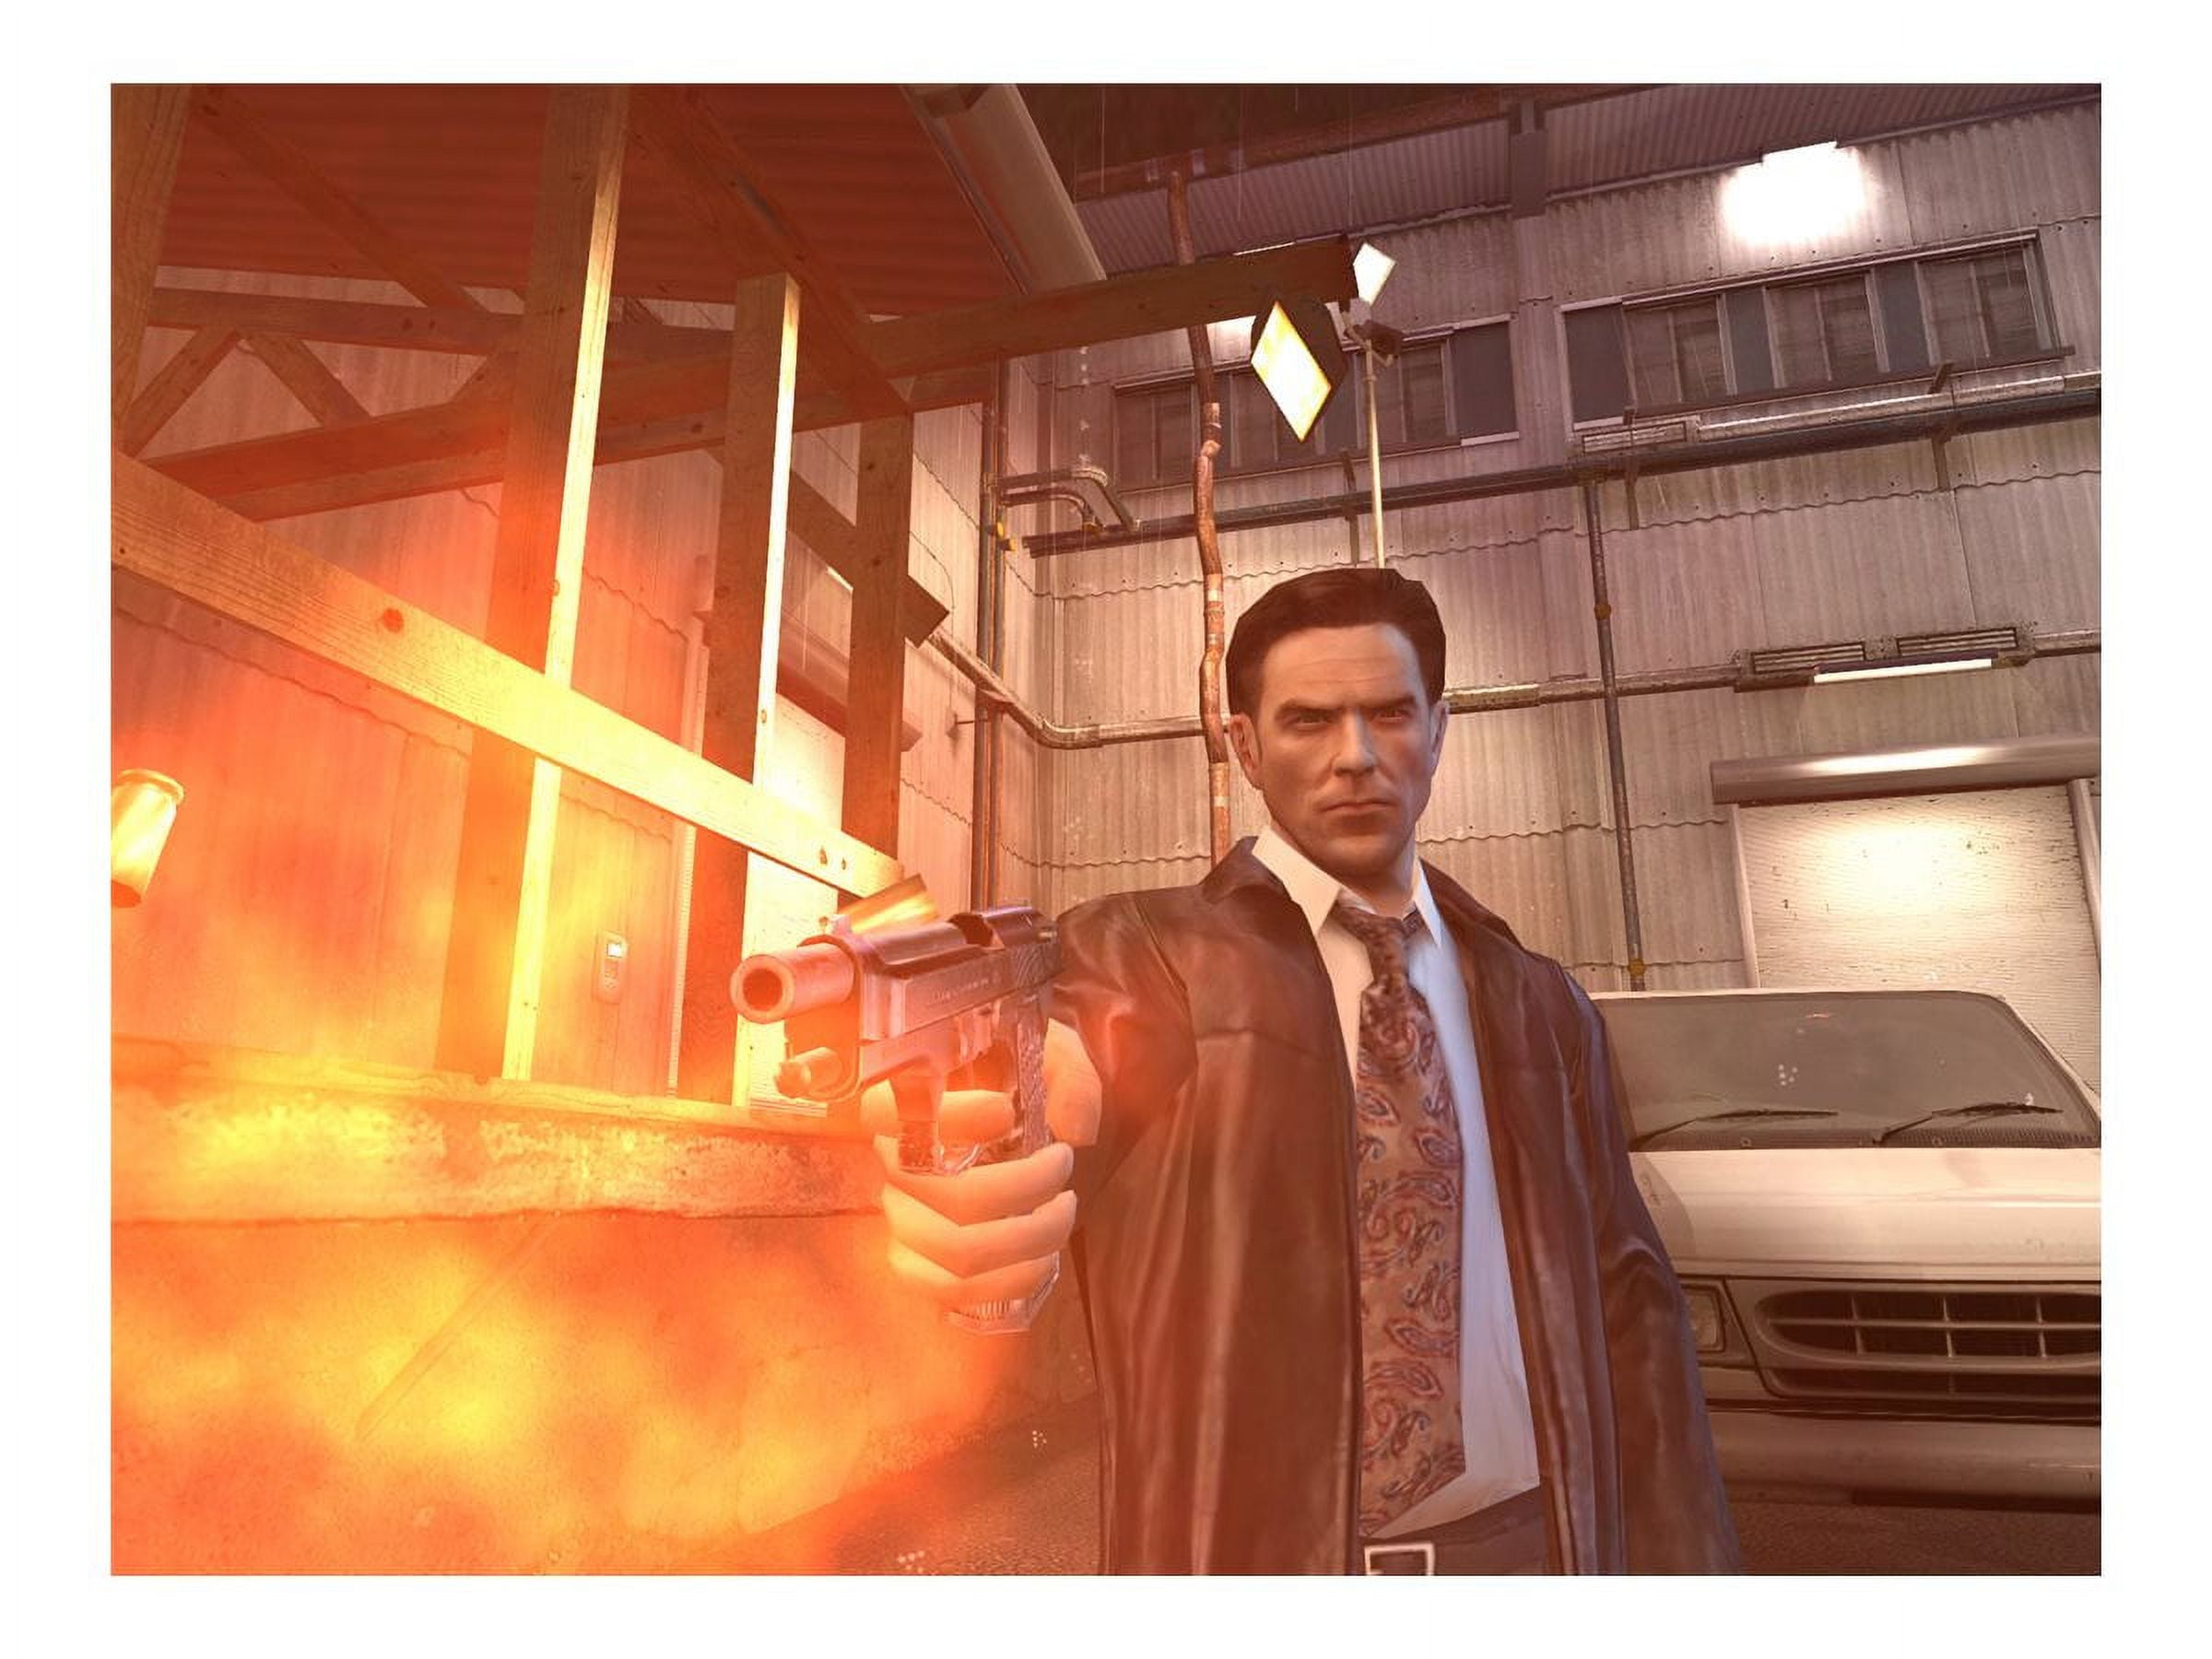  Max Payne 2: The Fall of Max Payne - PlayStation 2